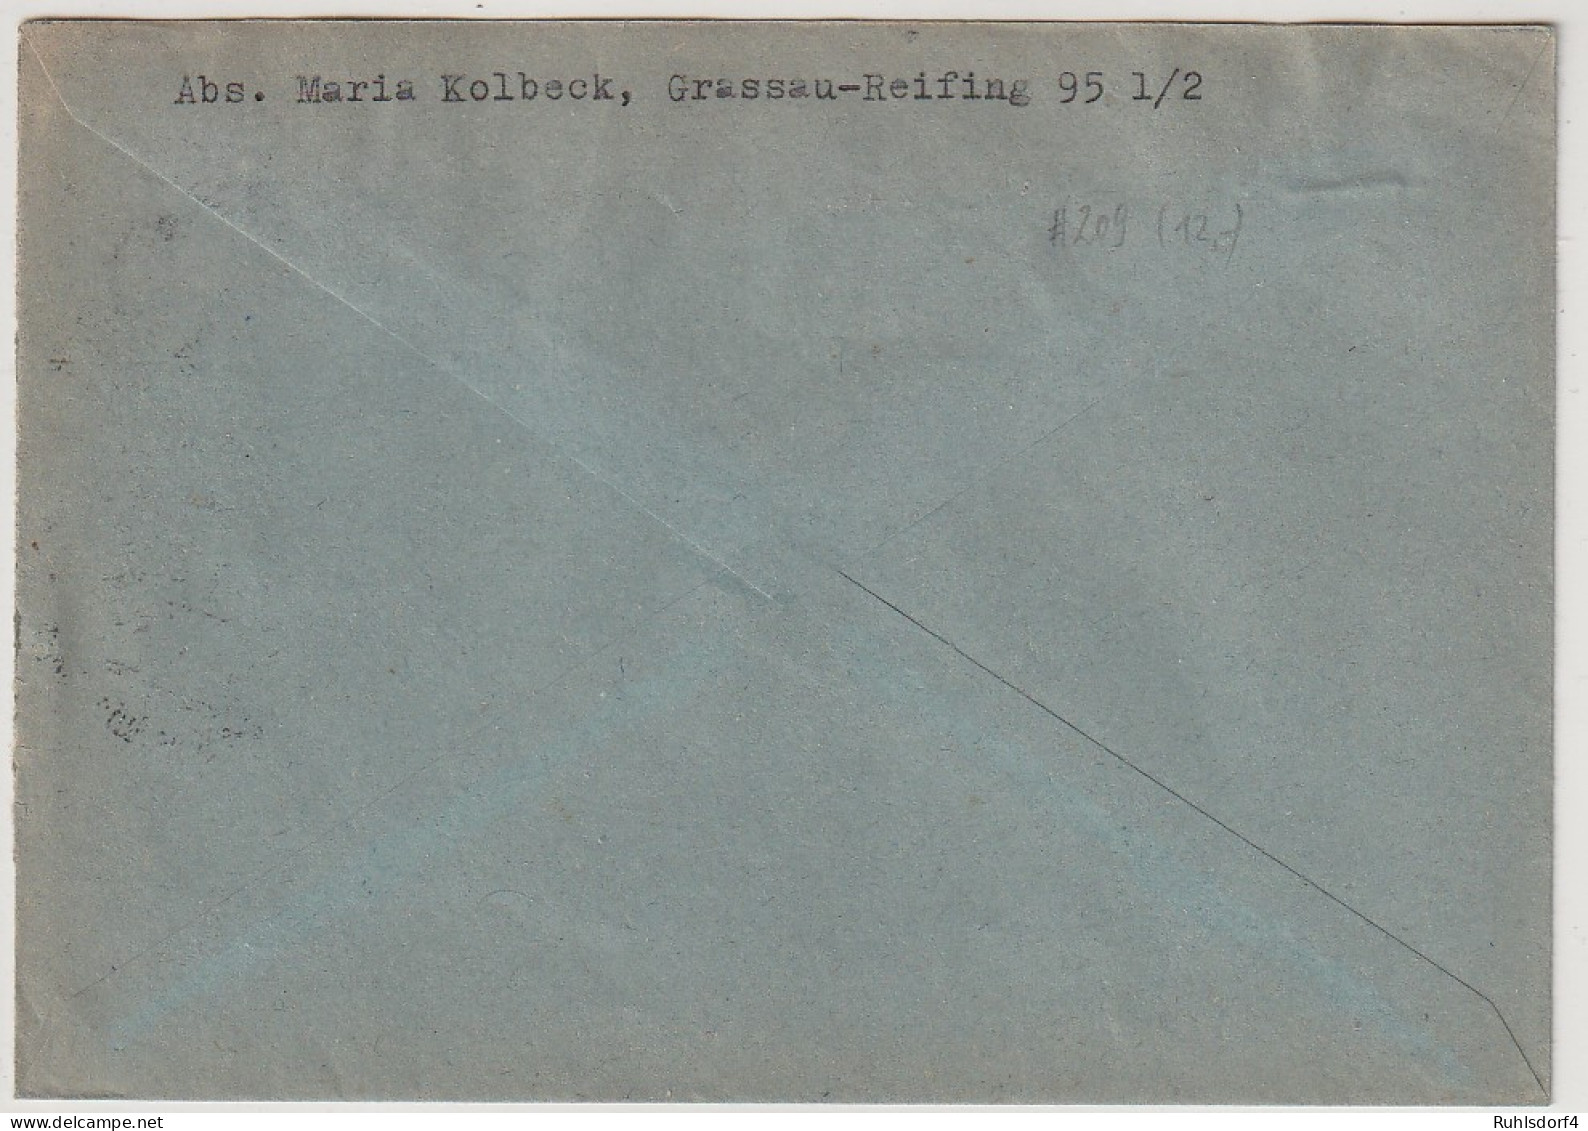 Bund: Oskar Von Miller (Nr. 209) In Sauberer MeF - Briefe U. Dokumente